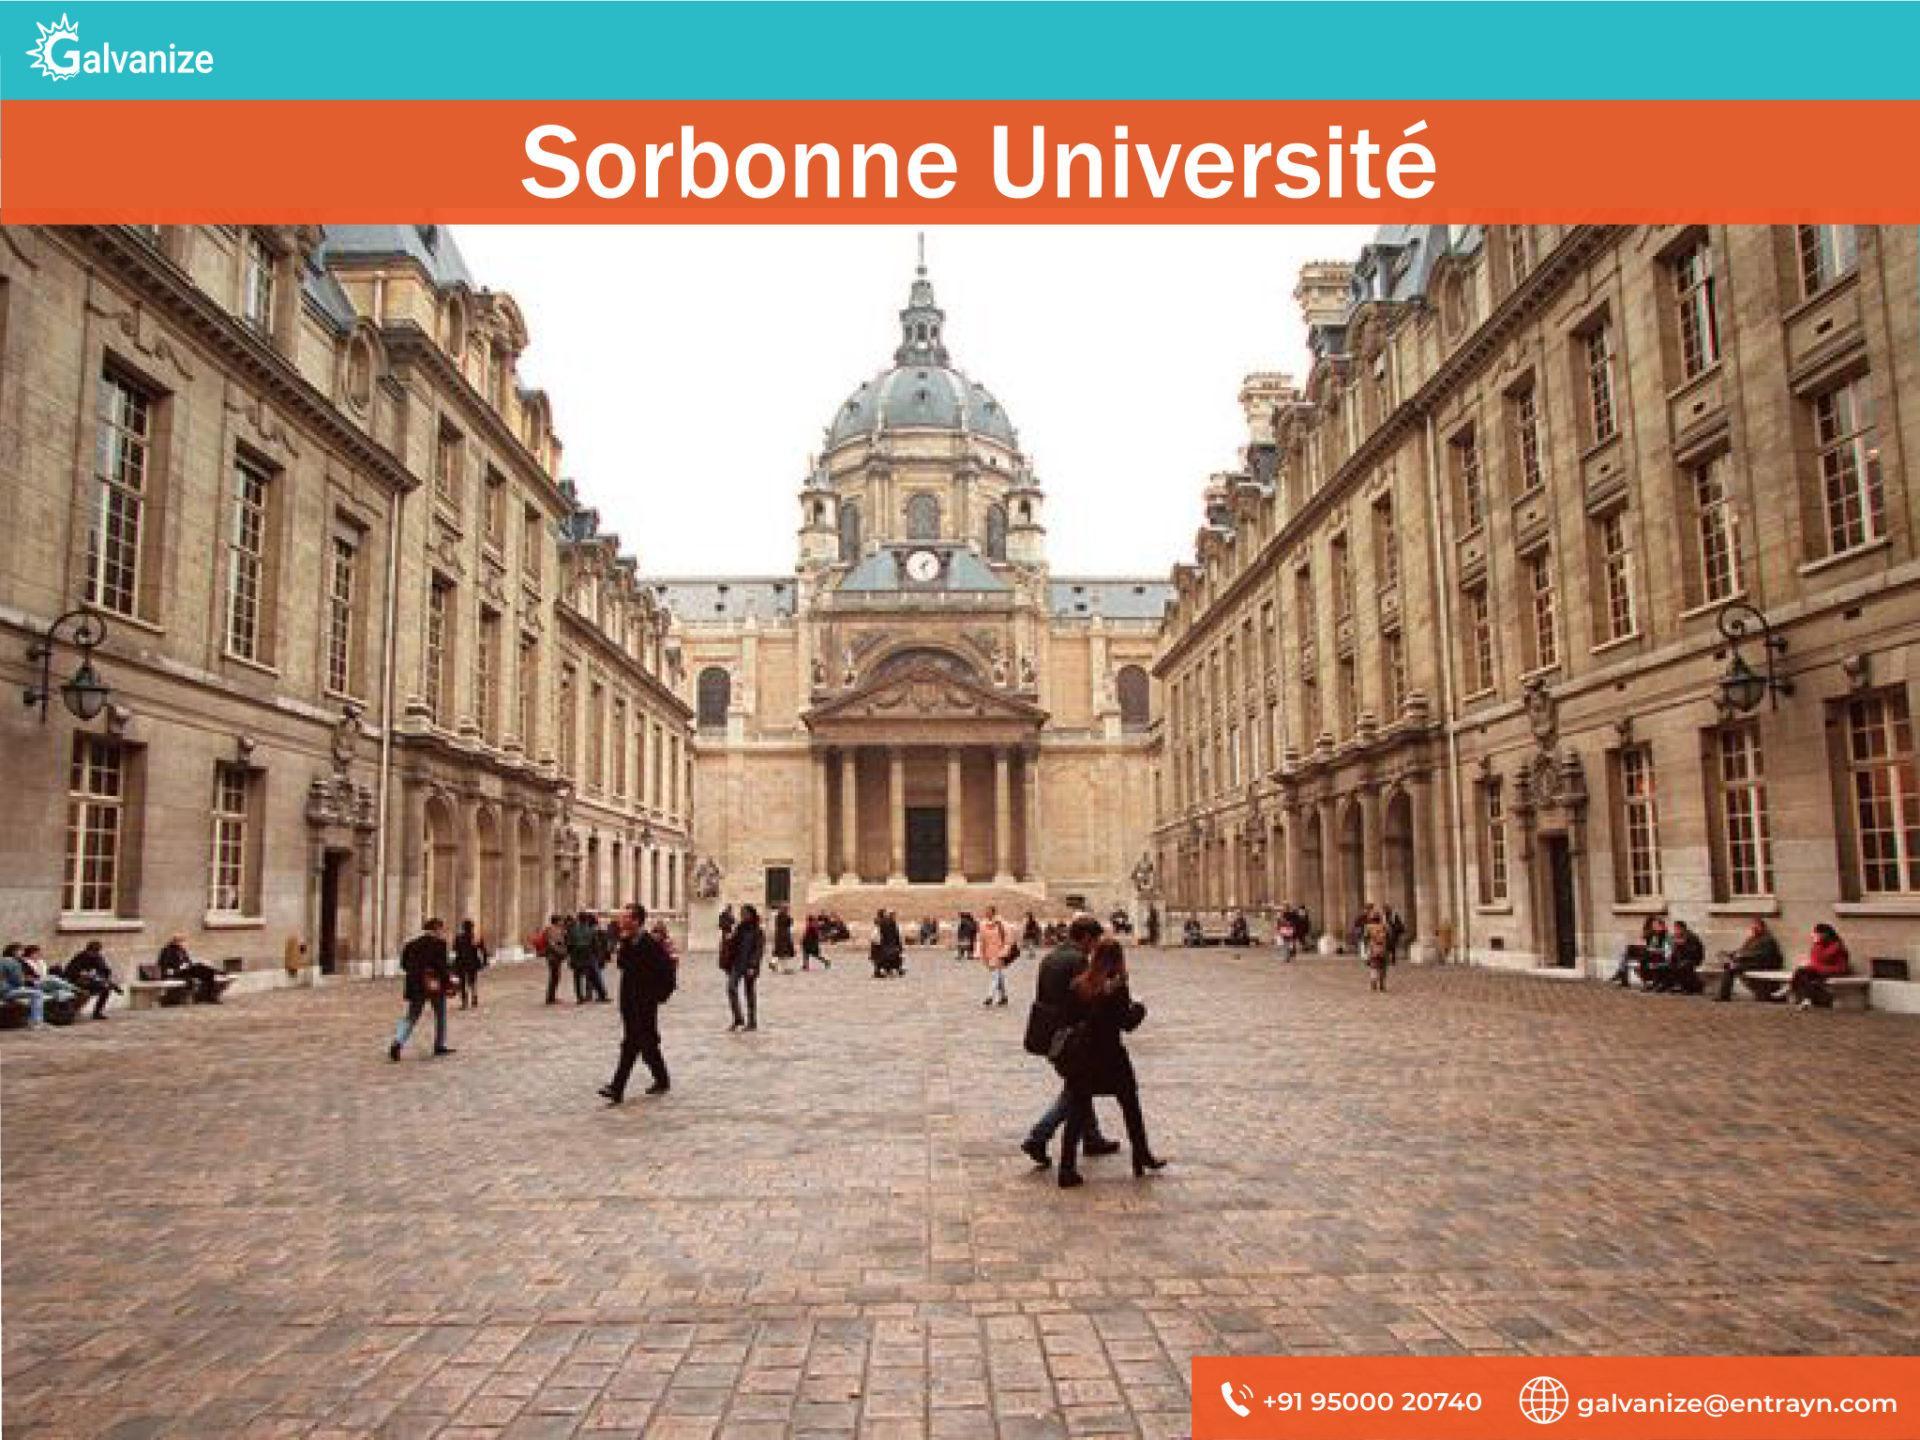 Sorbonne UniversitéSorbonne Université | Top Universities in France